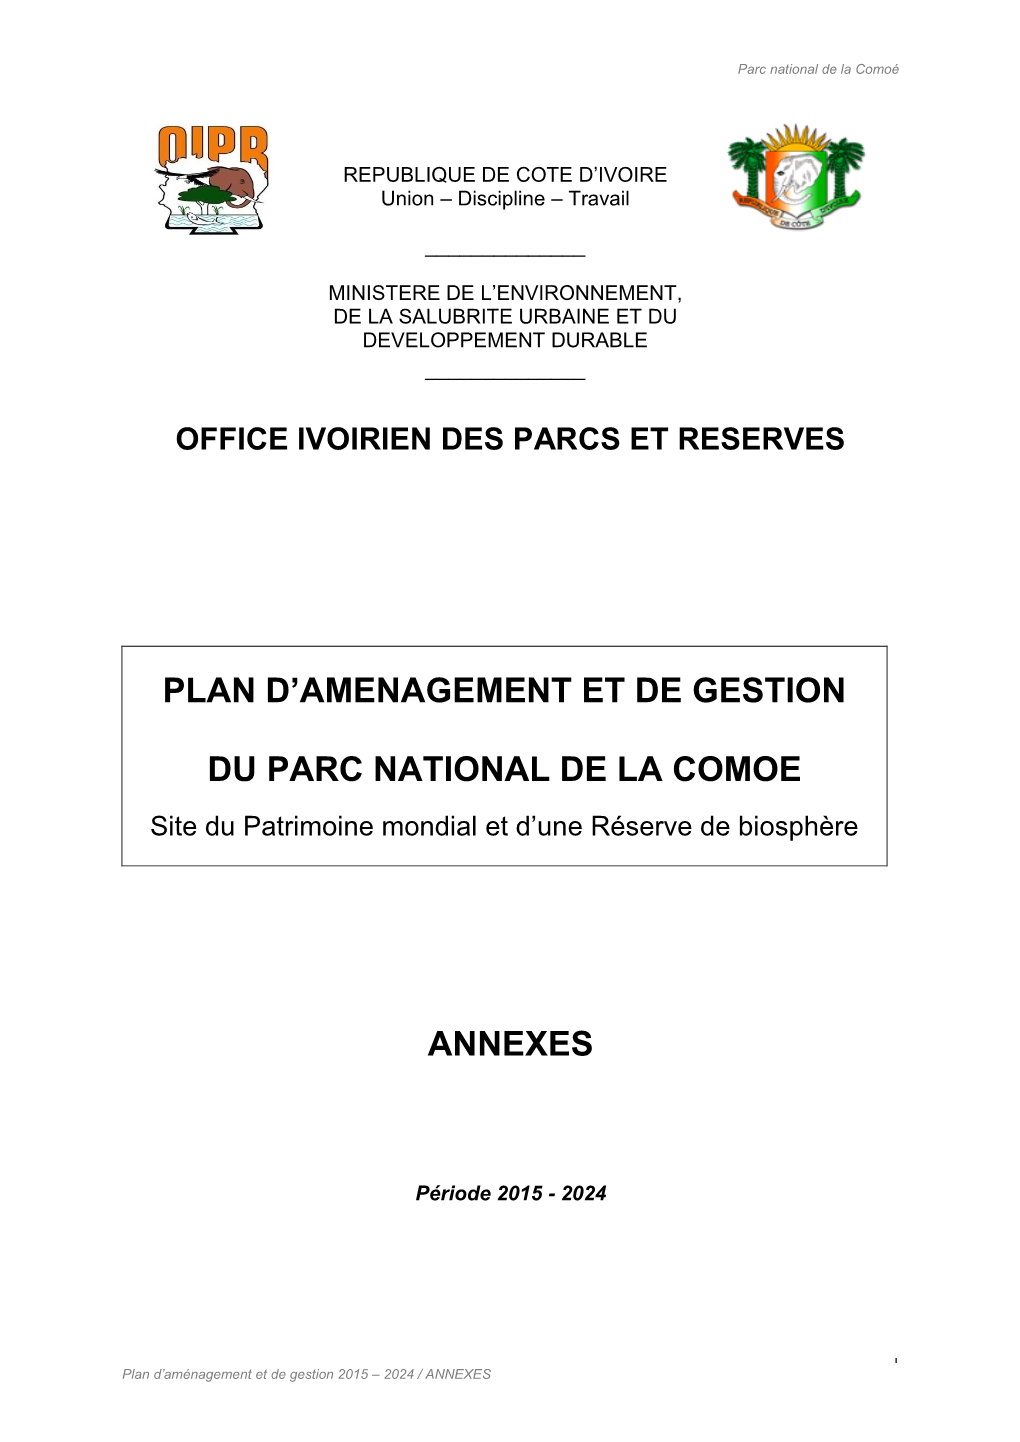 Plan D'amenagement Et De Gestion Du Parc National De La Comoe